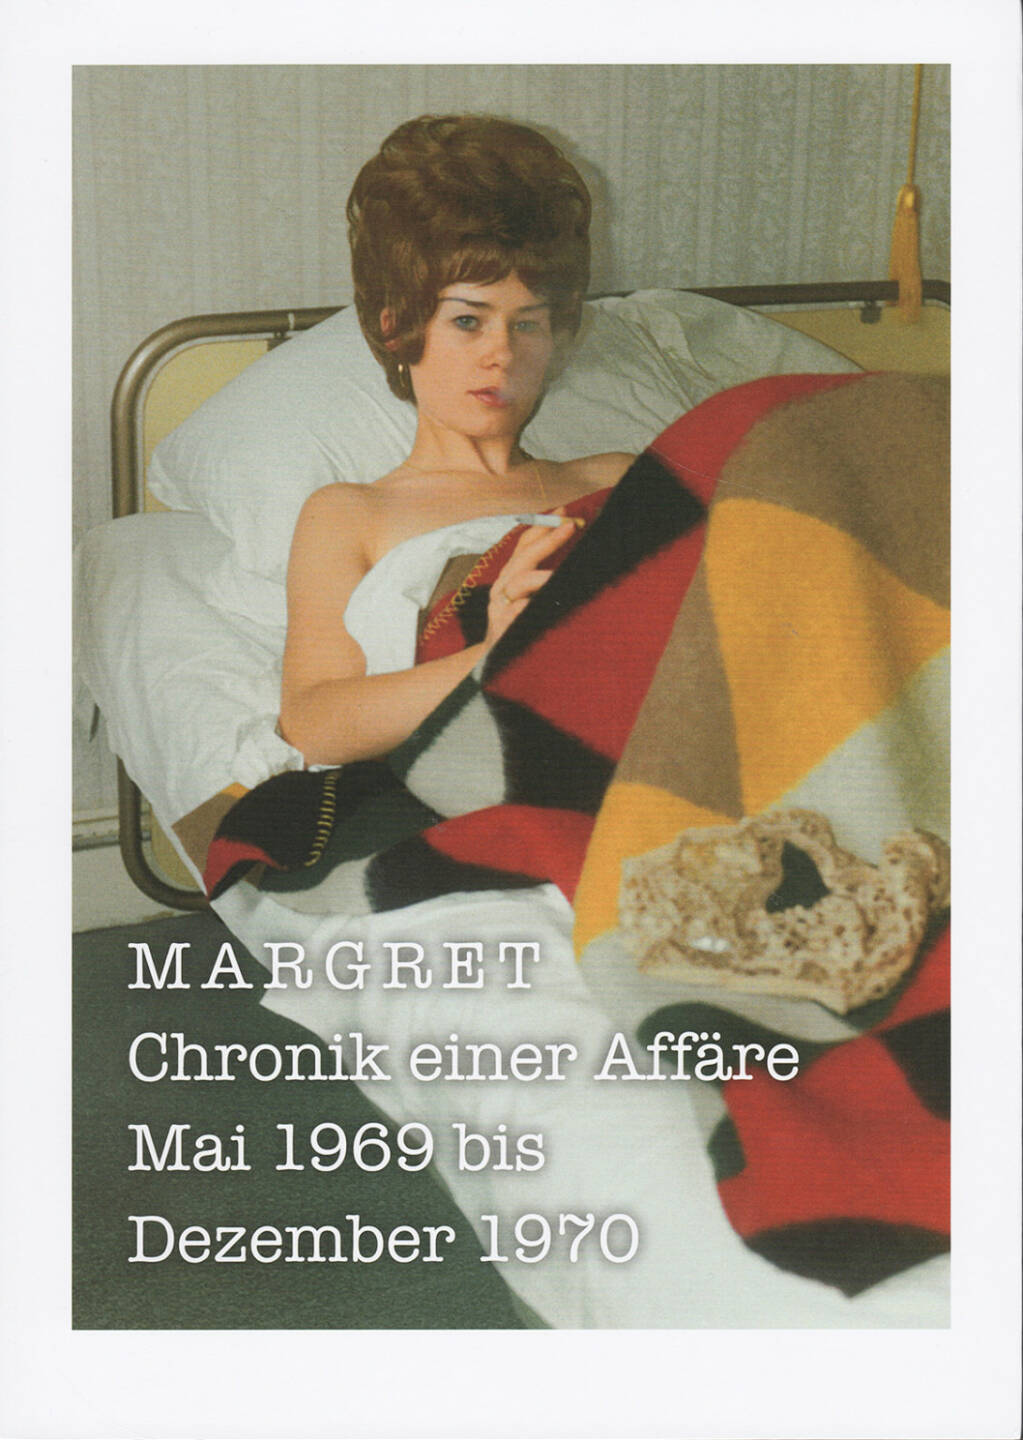 Nicole Delmes & Susanne Zander (Eds.) - Margret: Chronik einer Affäre, König 2012, Cover - http://josefchladek.com/book/nicole_delmes_susanne_zander_eds_-_margret_chronik_einer_affare